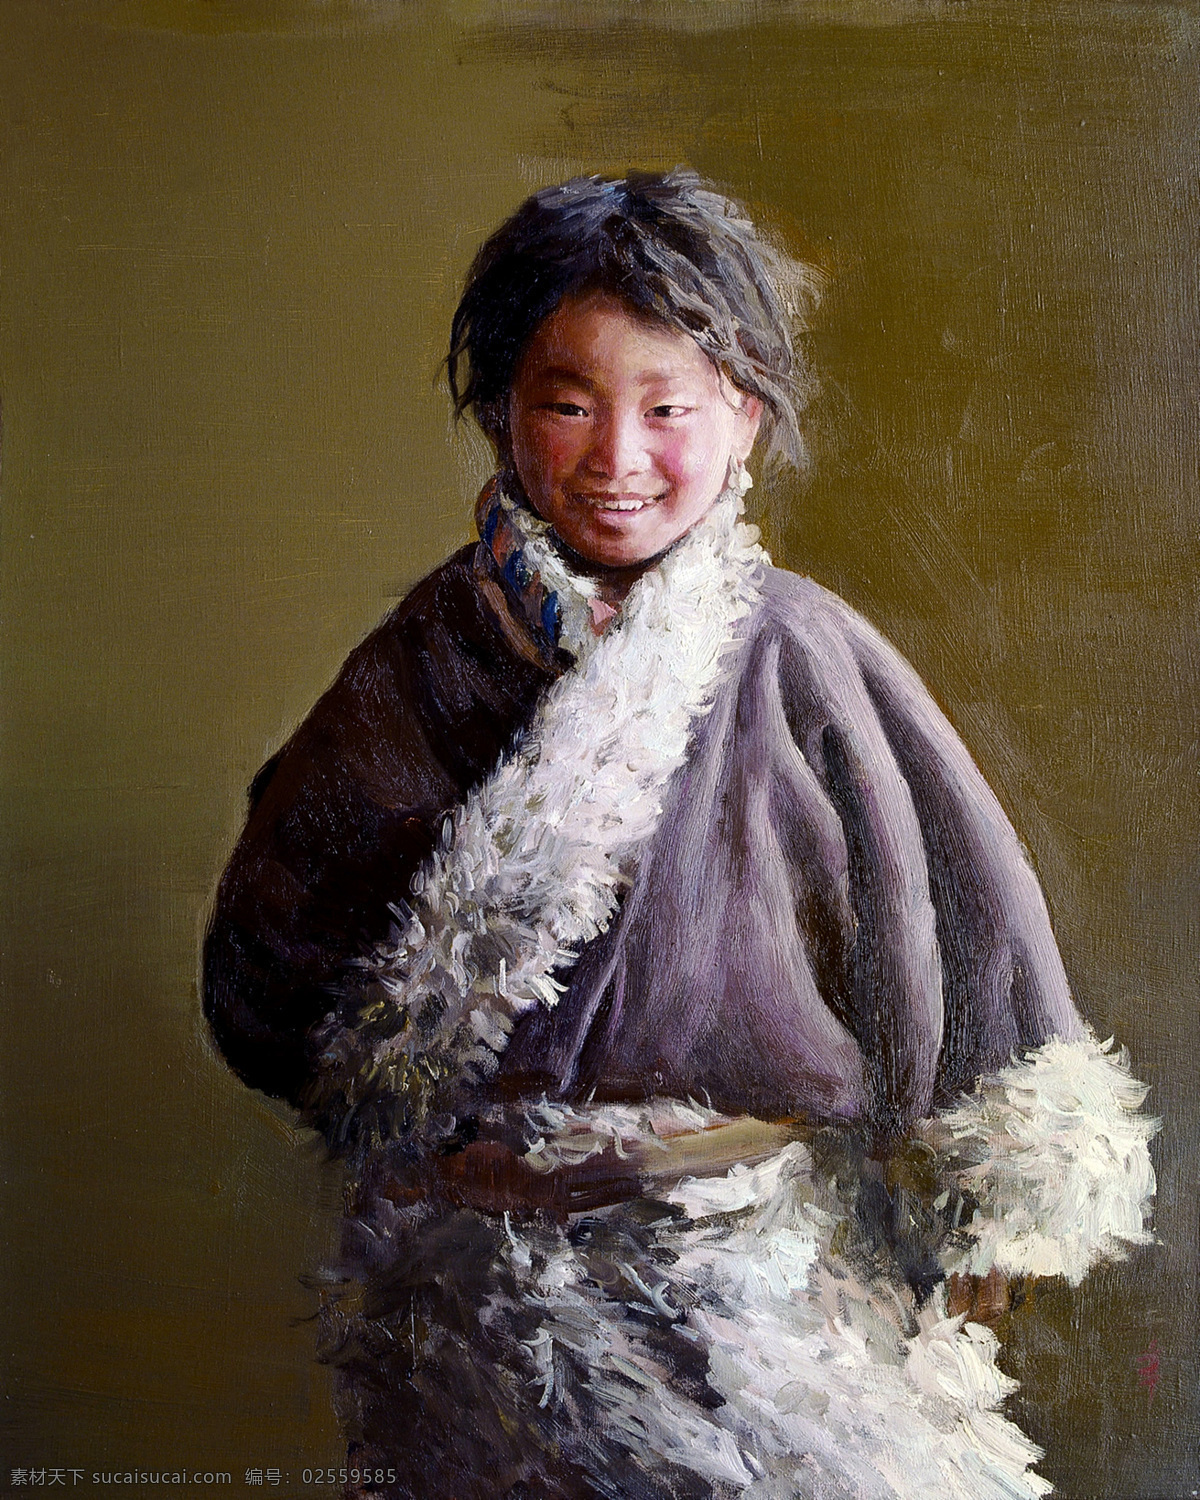 藏族 女孩 油画 写生 藏族女孩油画 西藏 肖像画 儿童油画肖像 人物肖像画 东方 人物 油画艺术 绘画艺术 装饰画 书画文字 文化艺术